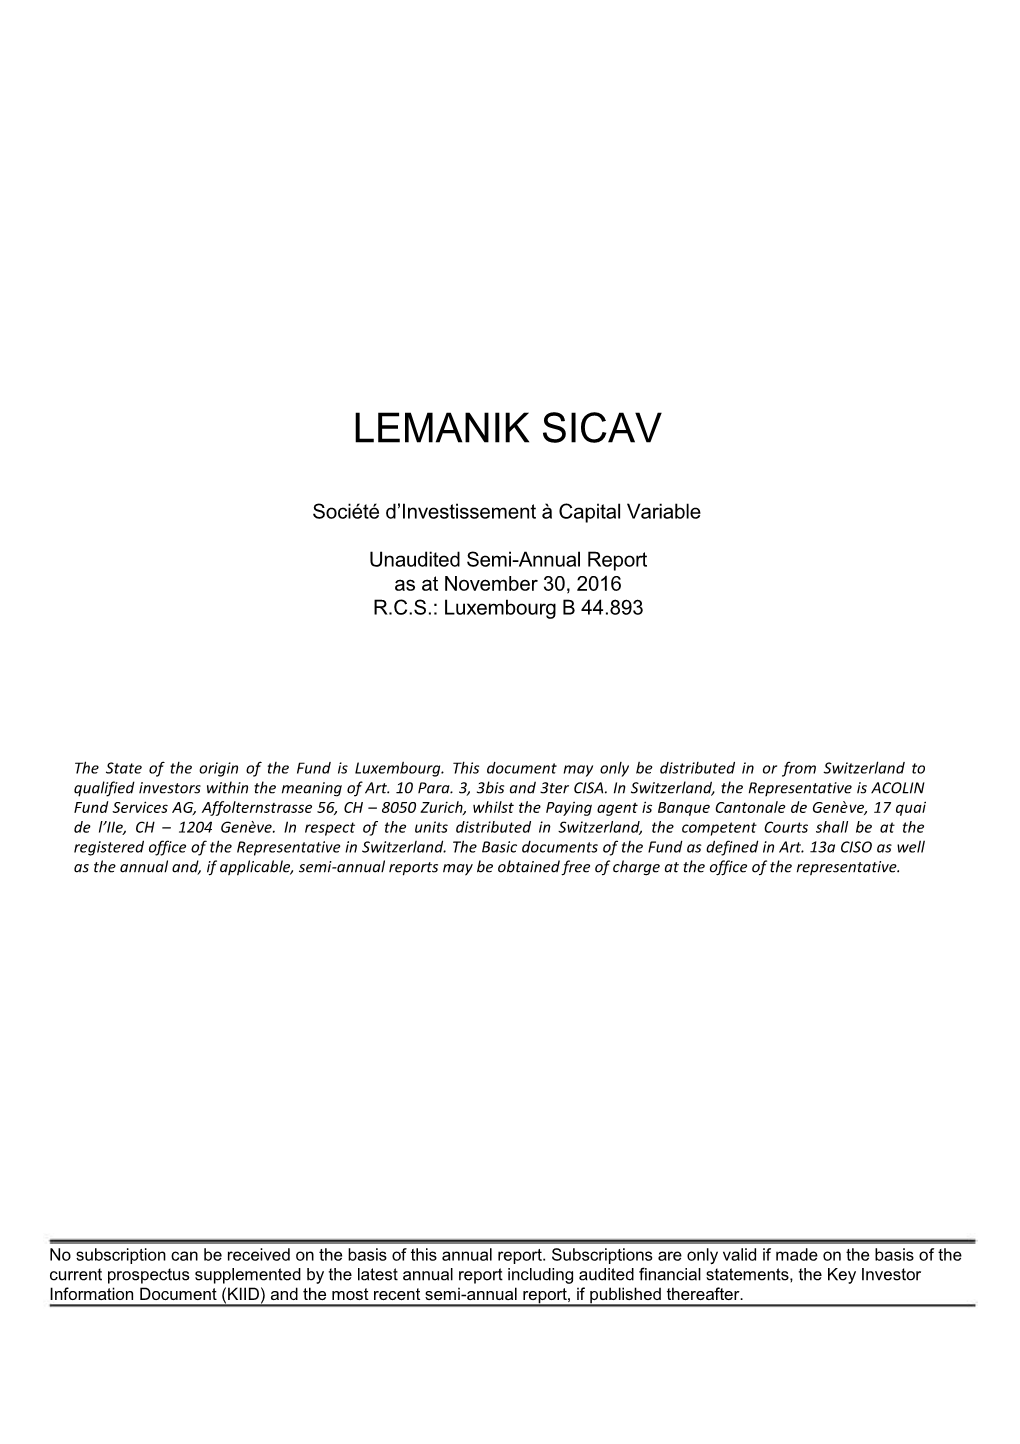 Lemanik Sicav